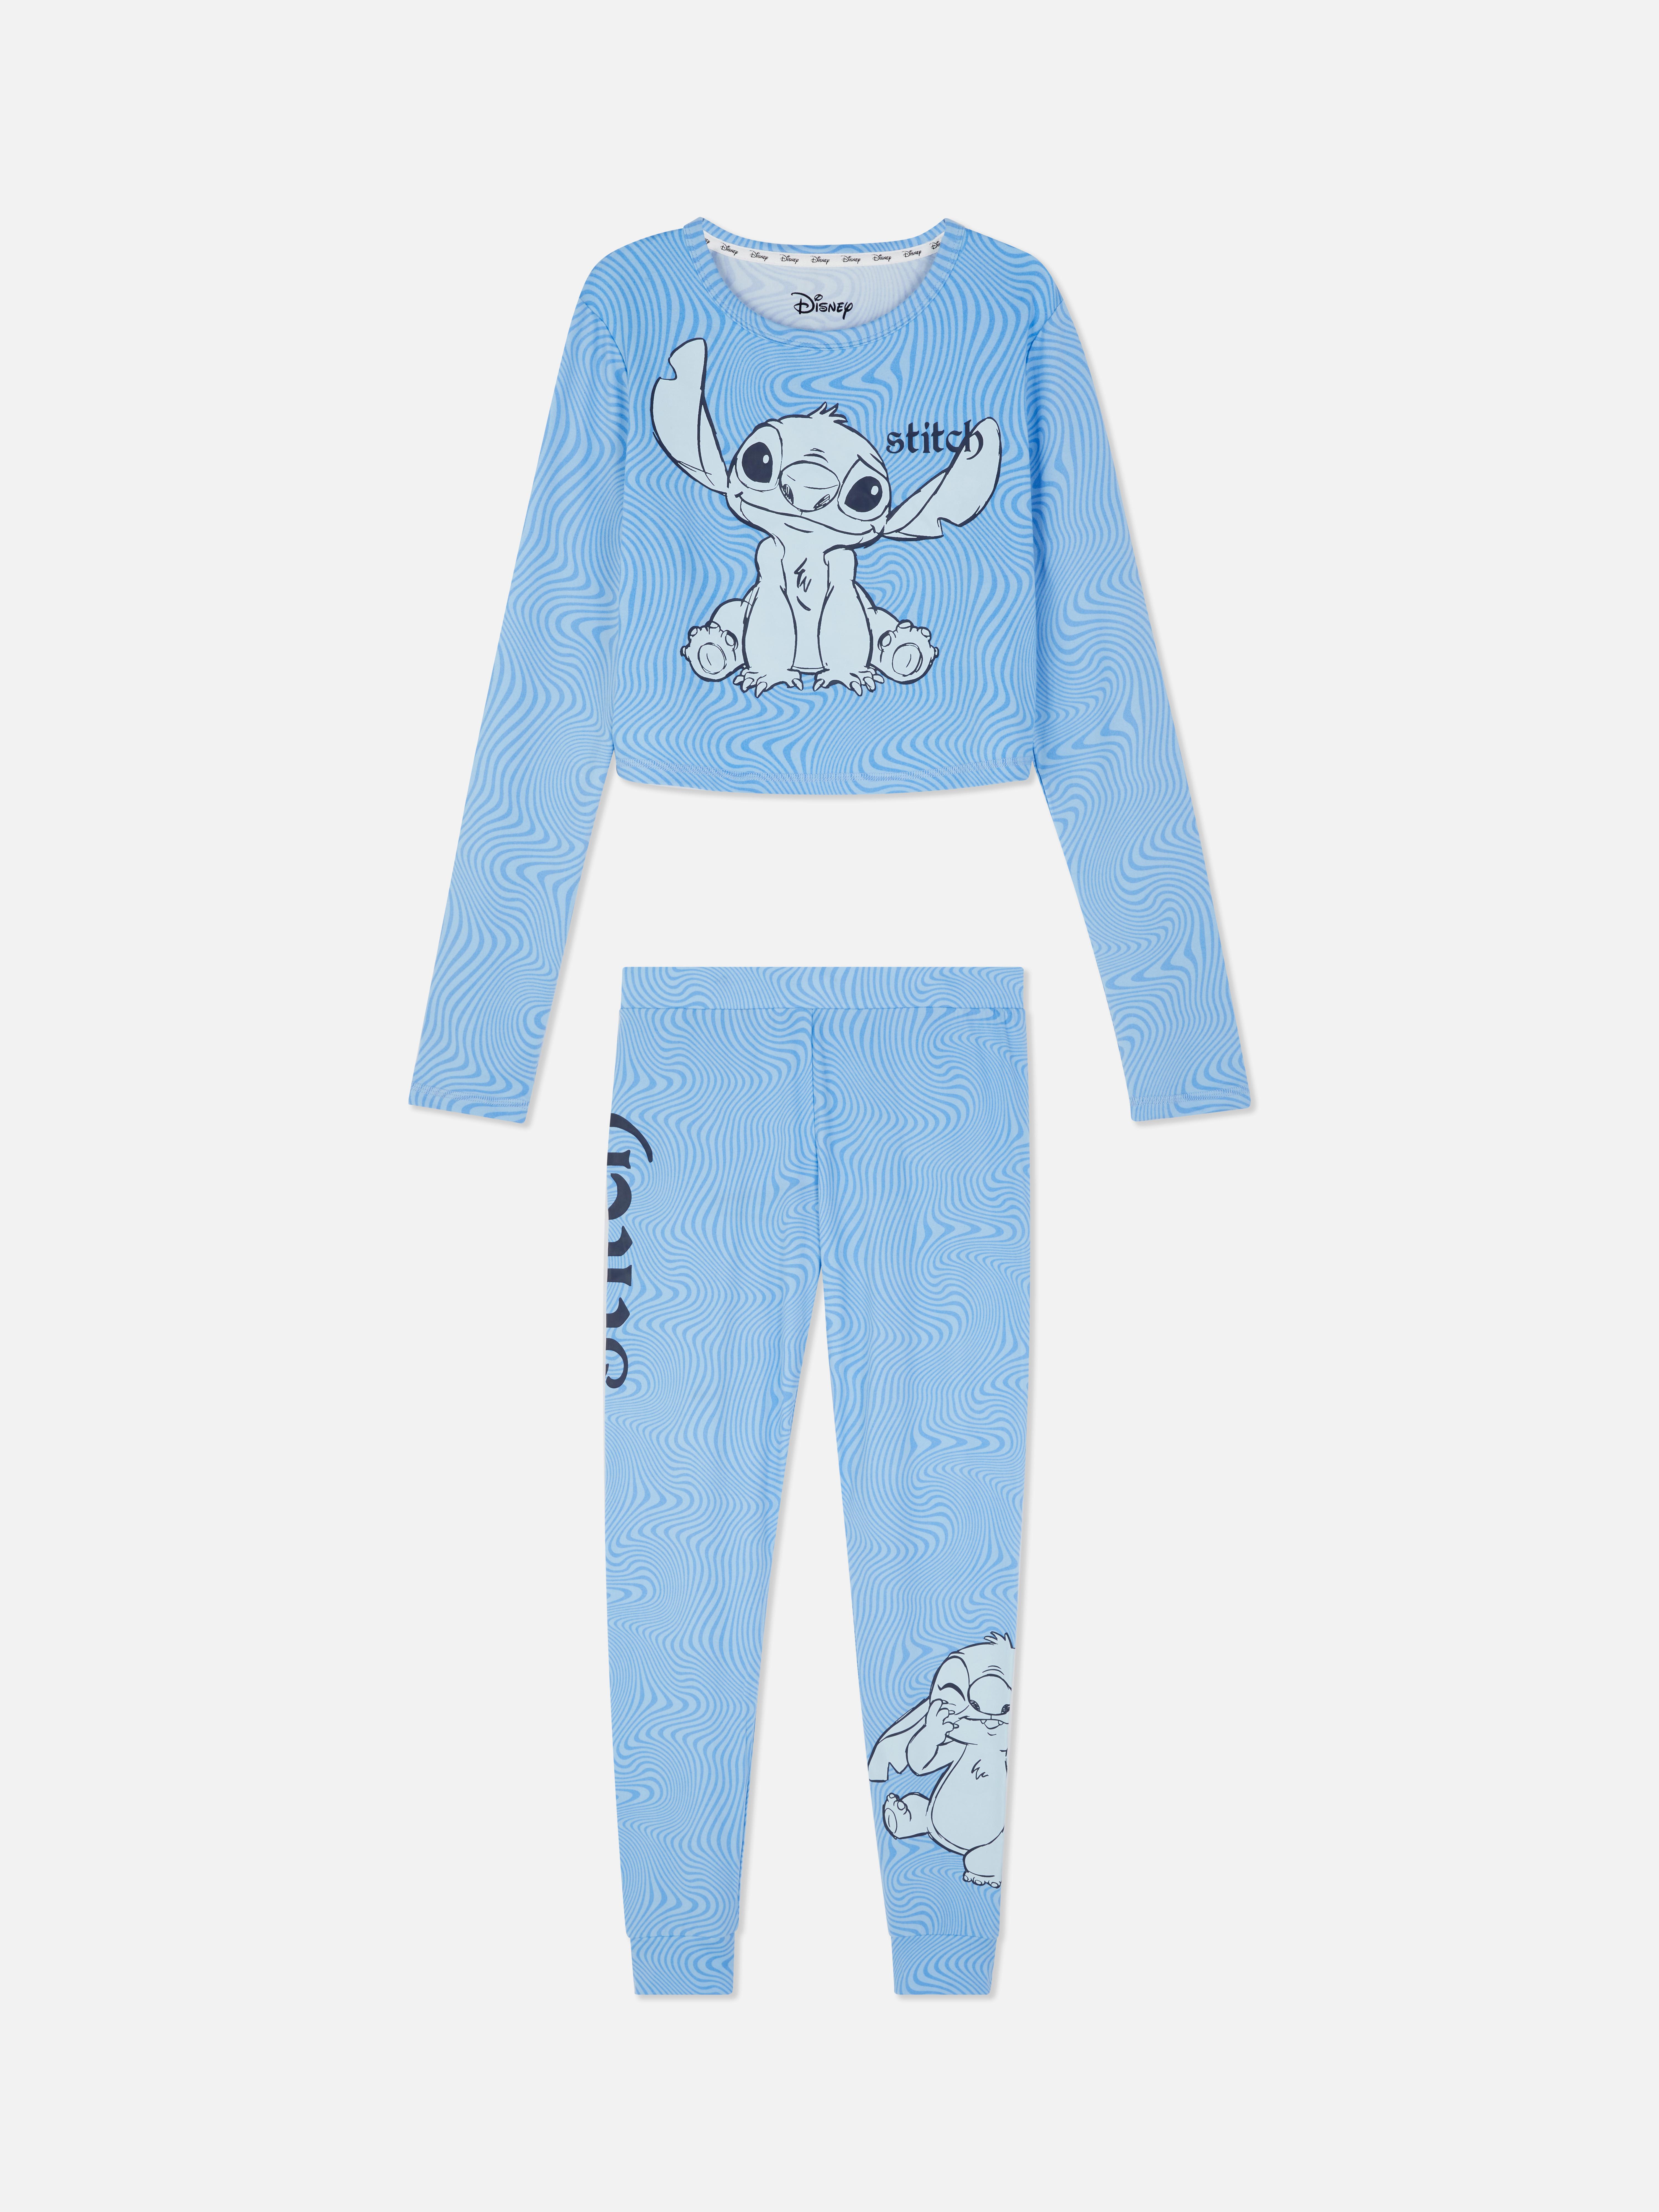 Disney’s Lilo & Stitch Pyjama Set